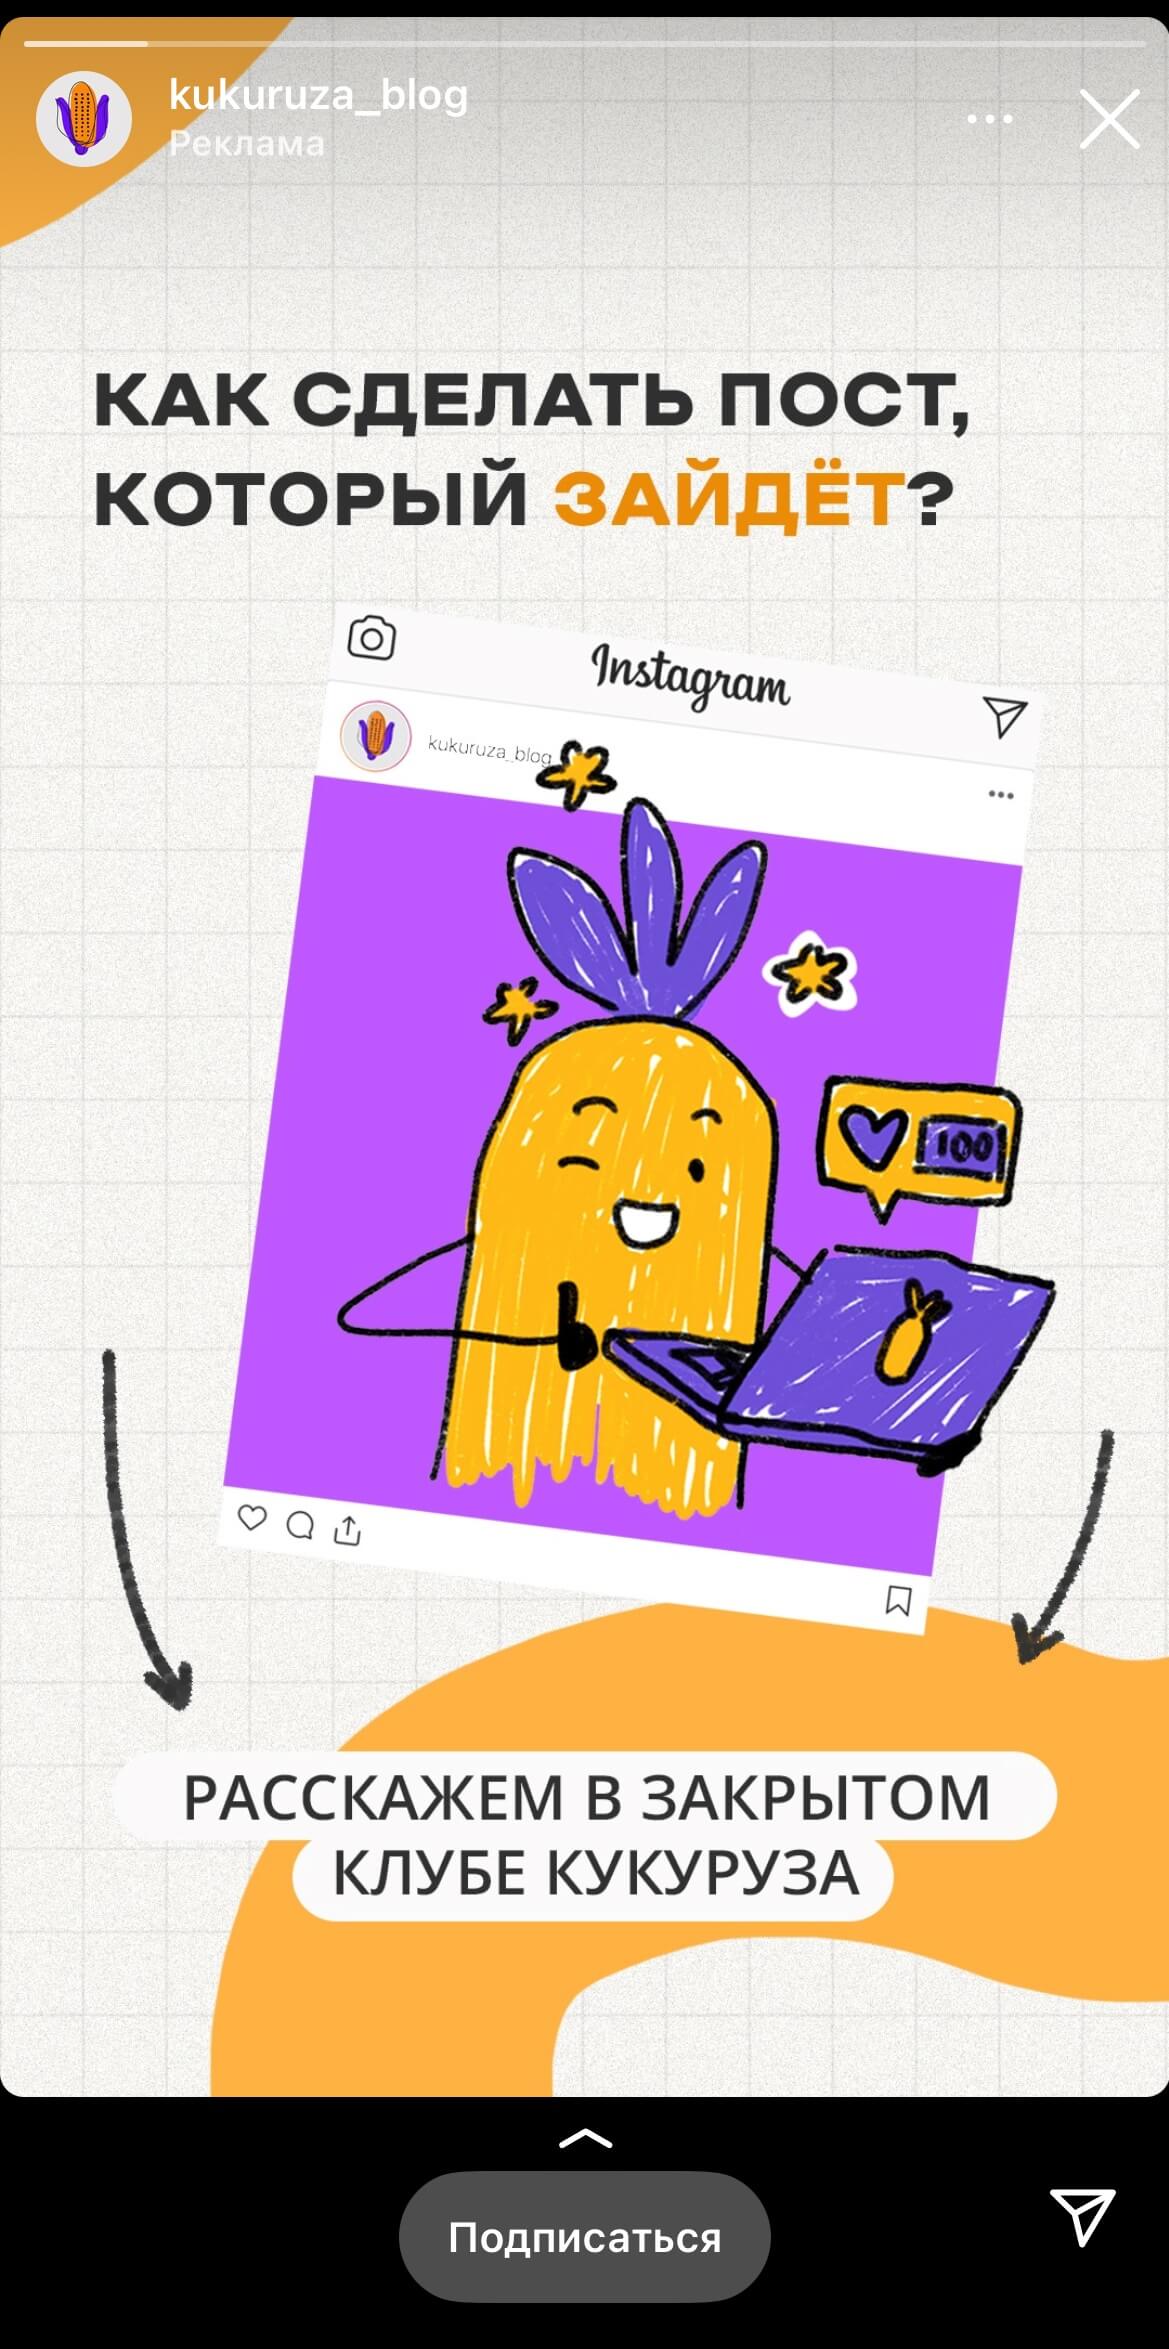 Реклама блога Кукуруза в сторис Instagram